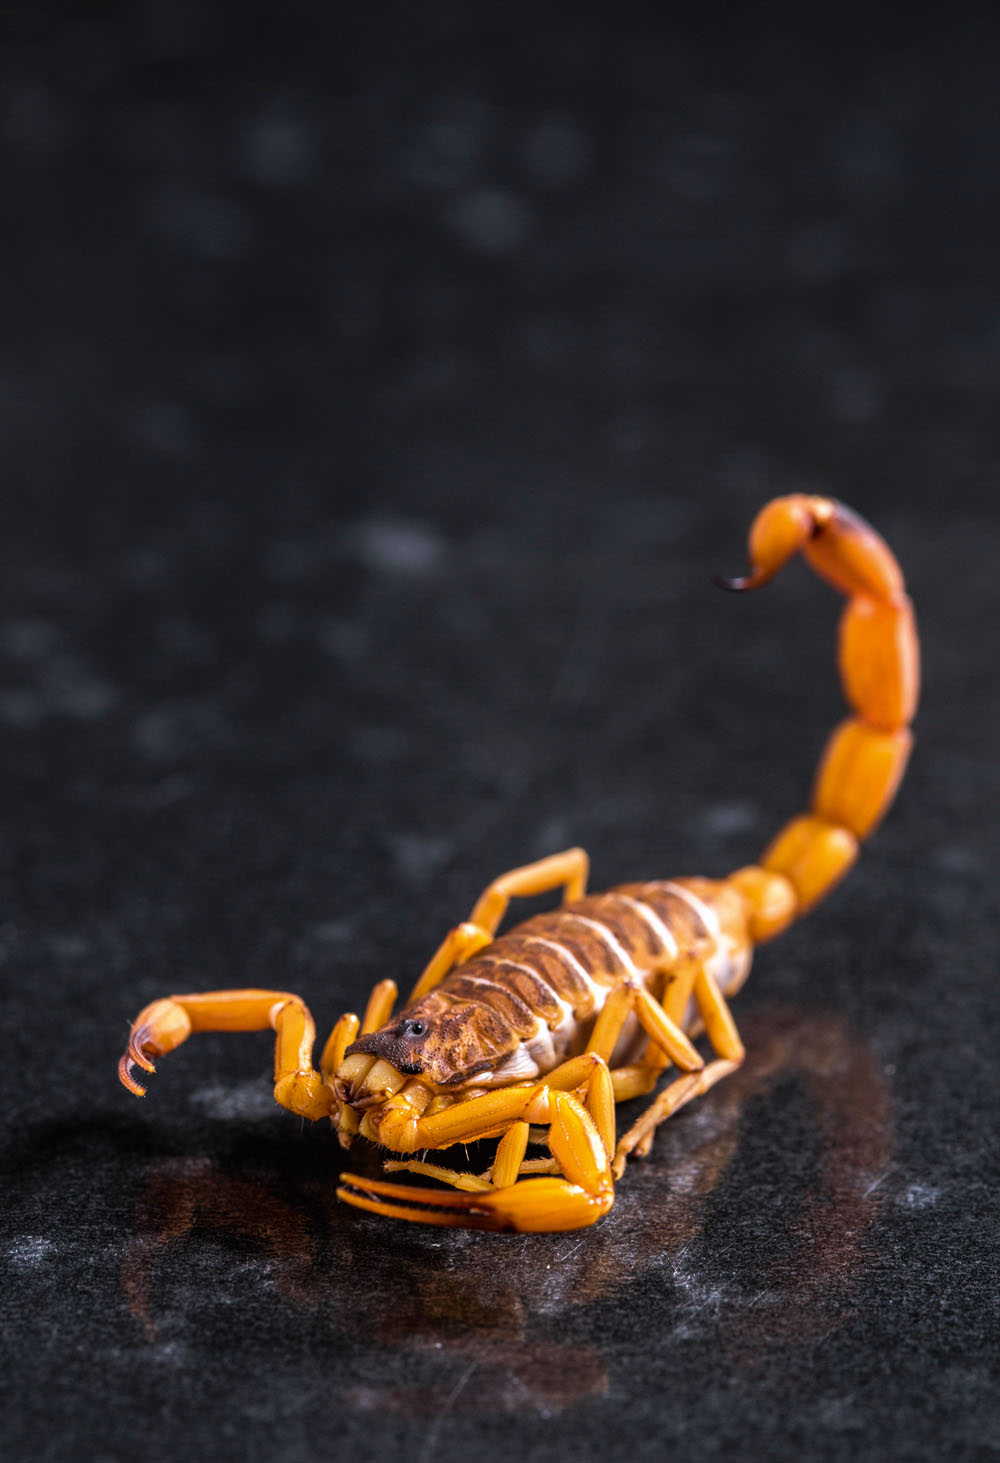 Tityus serrulatus, o "escorpião amarelo"